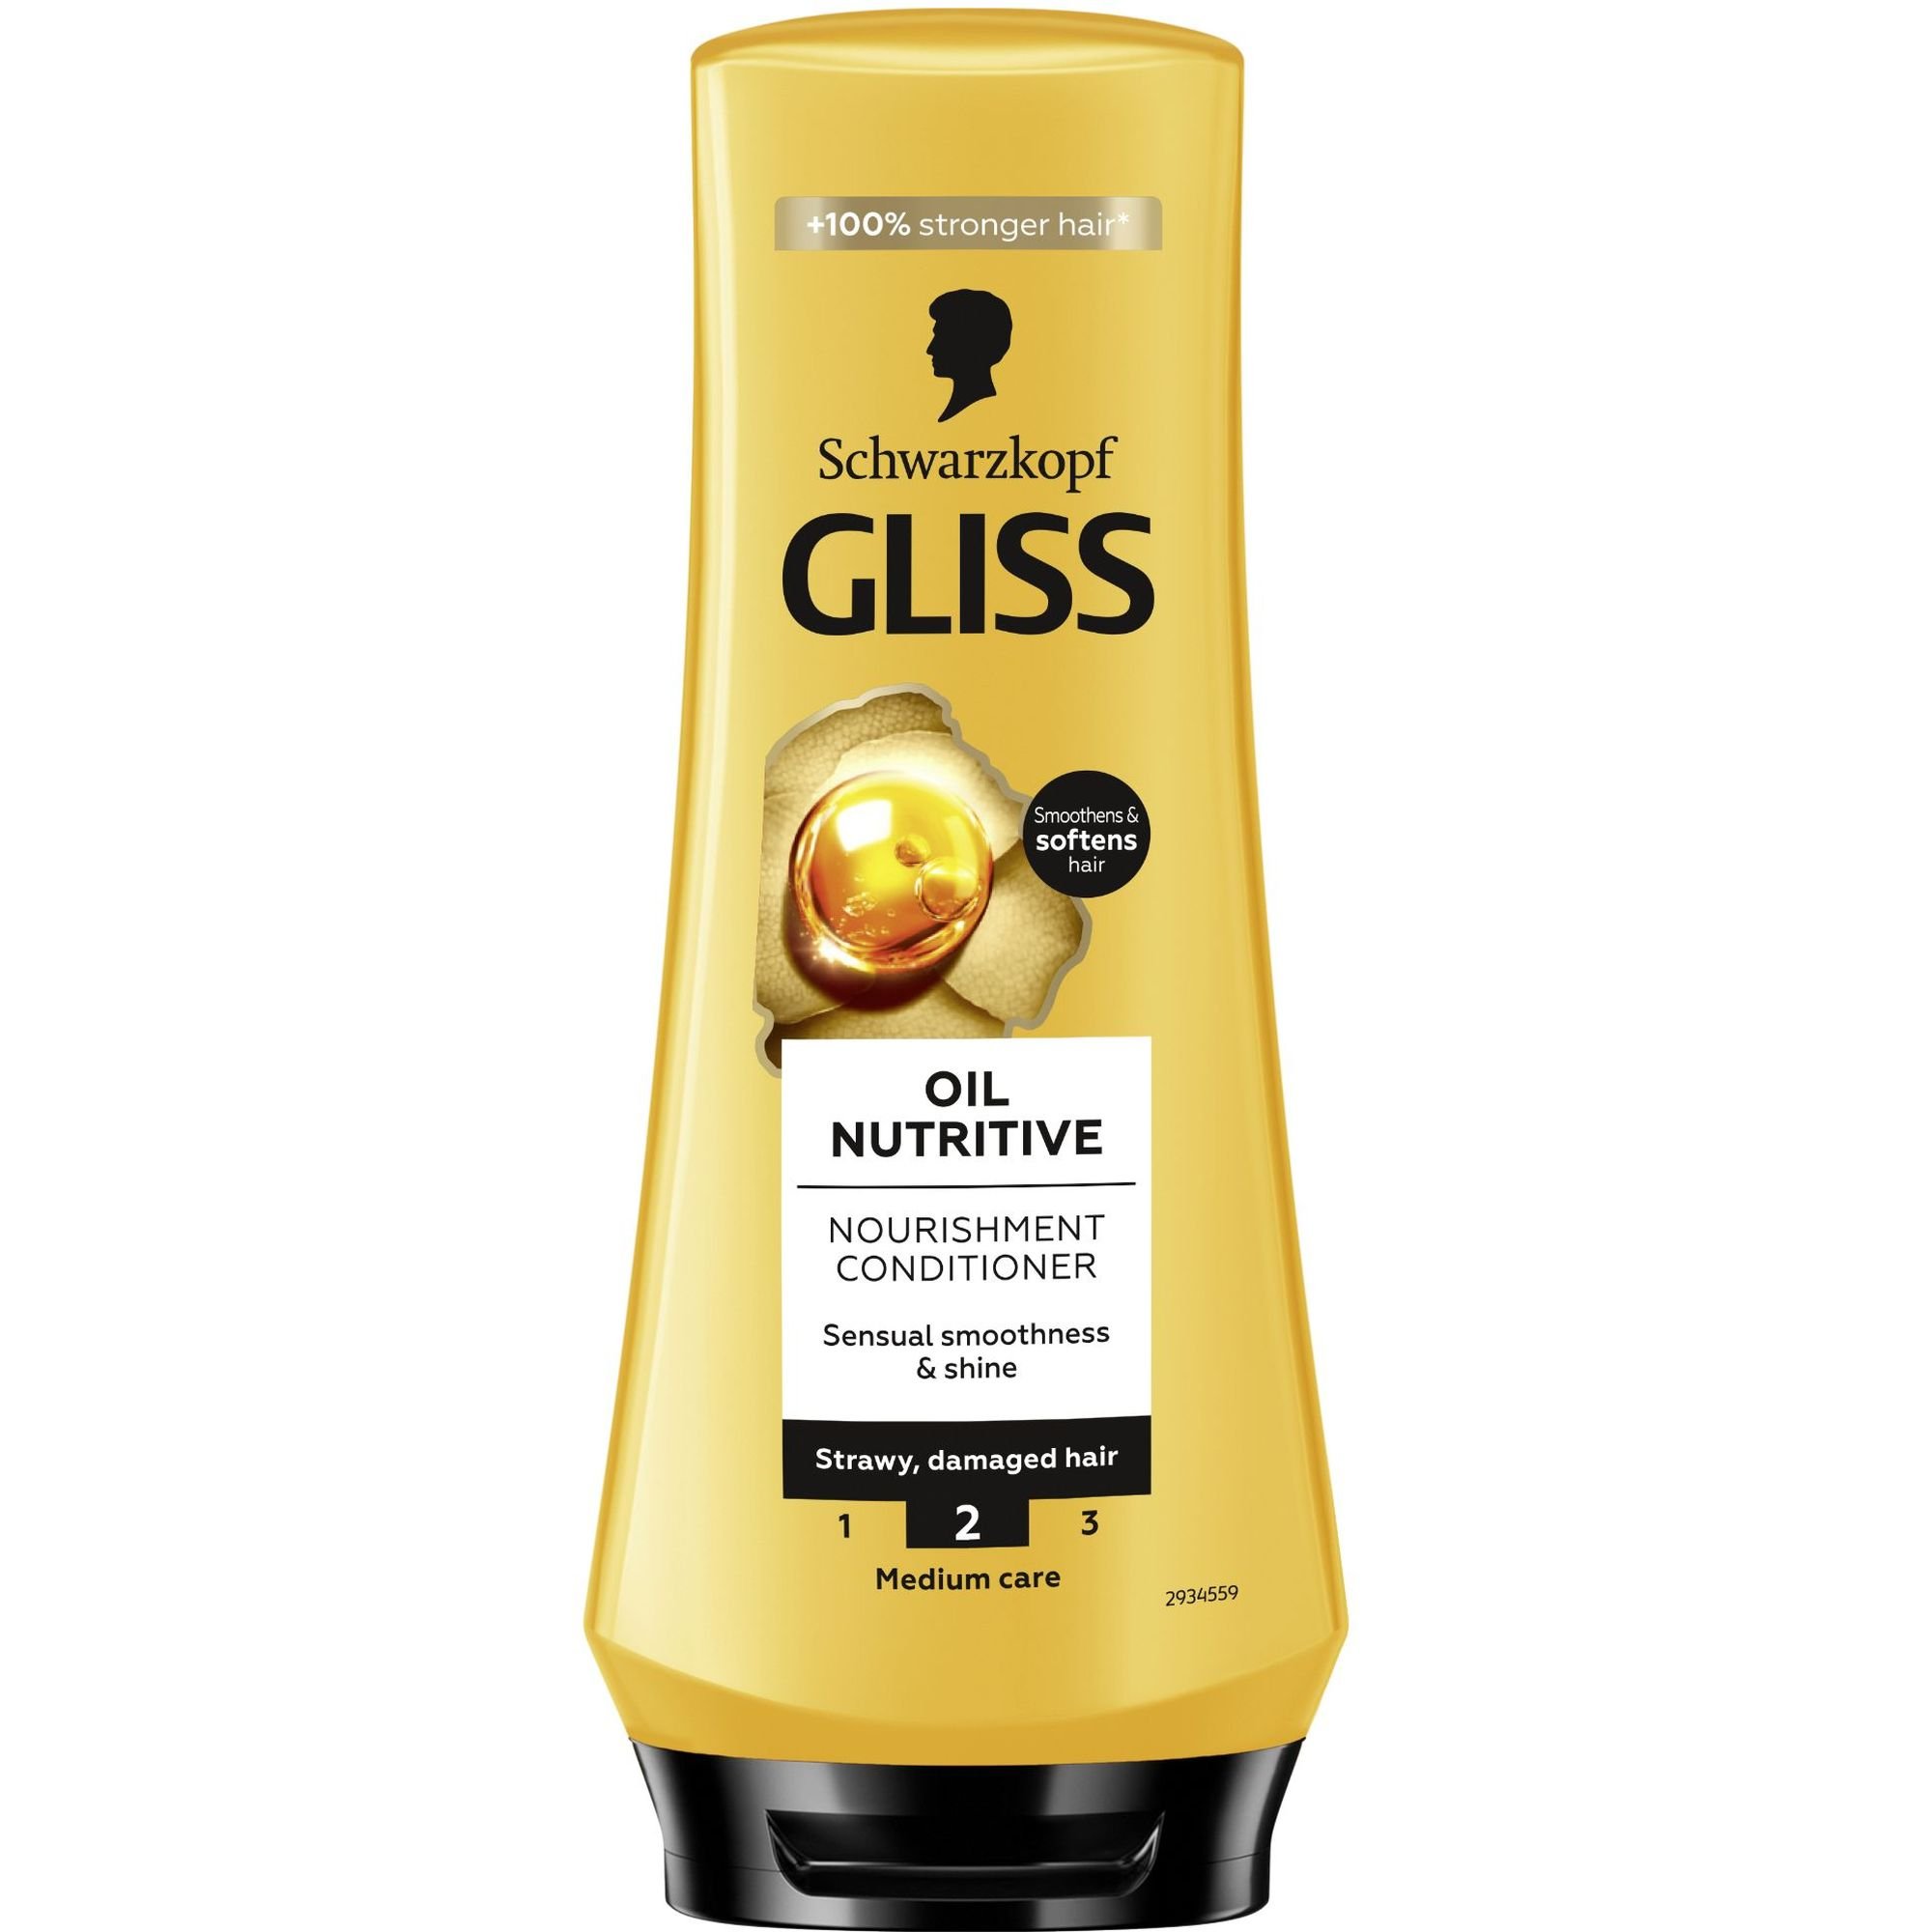 Бальзам Gliss Oil Nutritive для сухого та пошкодженого волосся 200 мл - фото 1